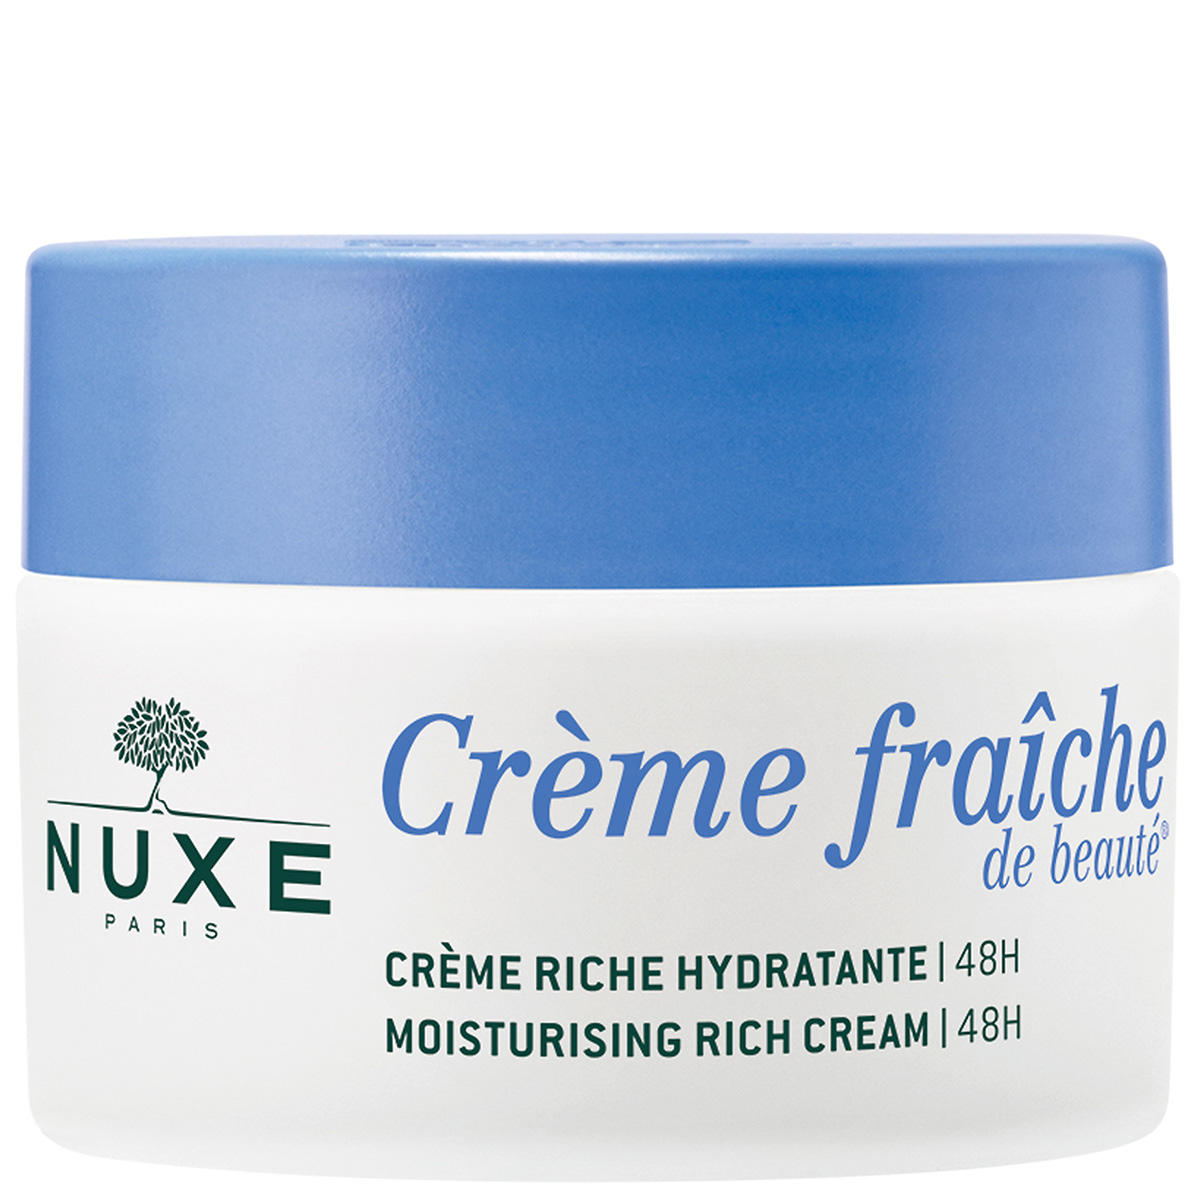 NUXE Crème Fraîche de Beauté Rica crema hidratante 50 ml - 1